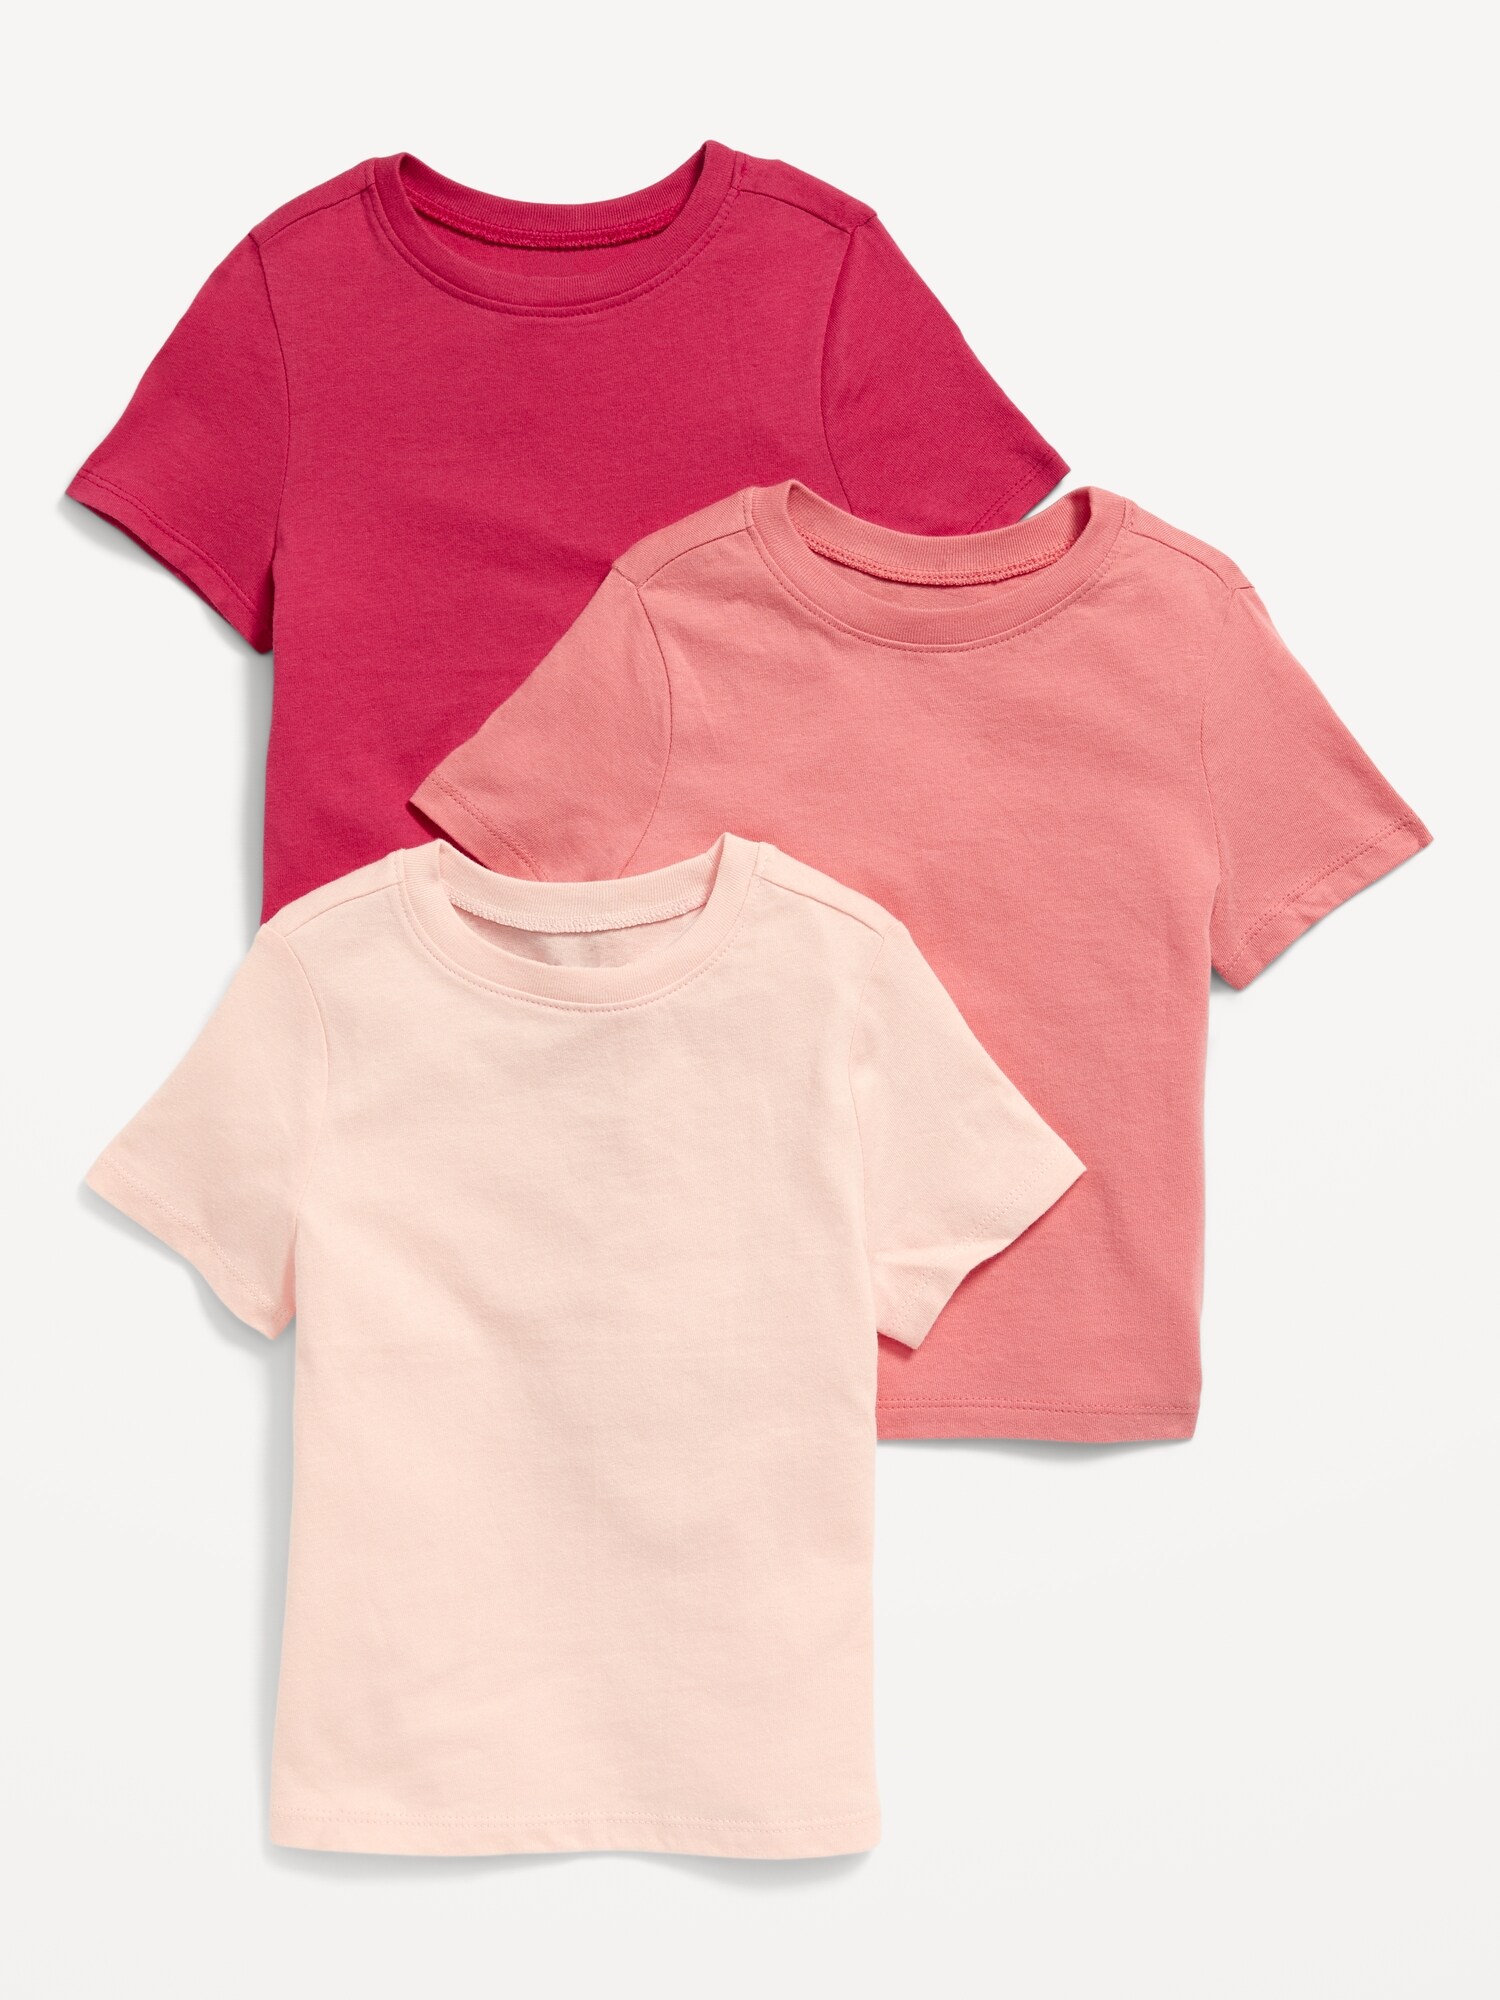 Unisex 3-Pack Short-Sleeve T-Shirt for Toddler | Old Navy